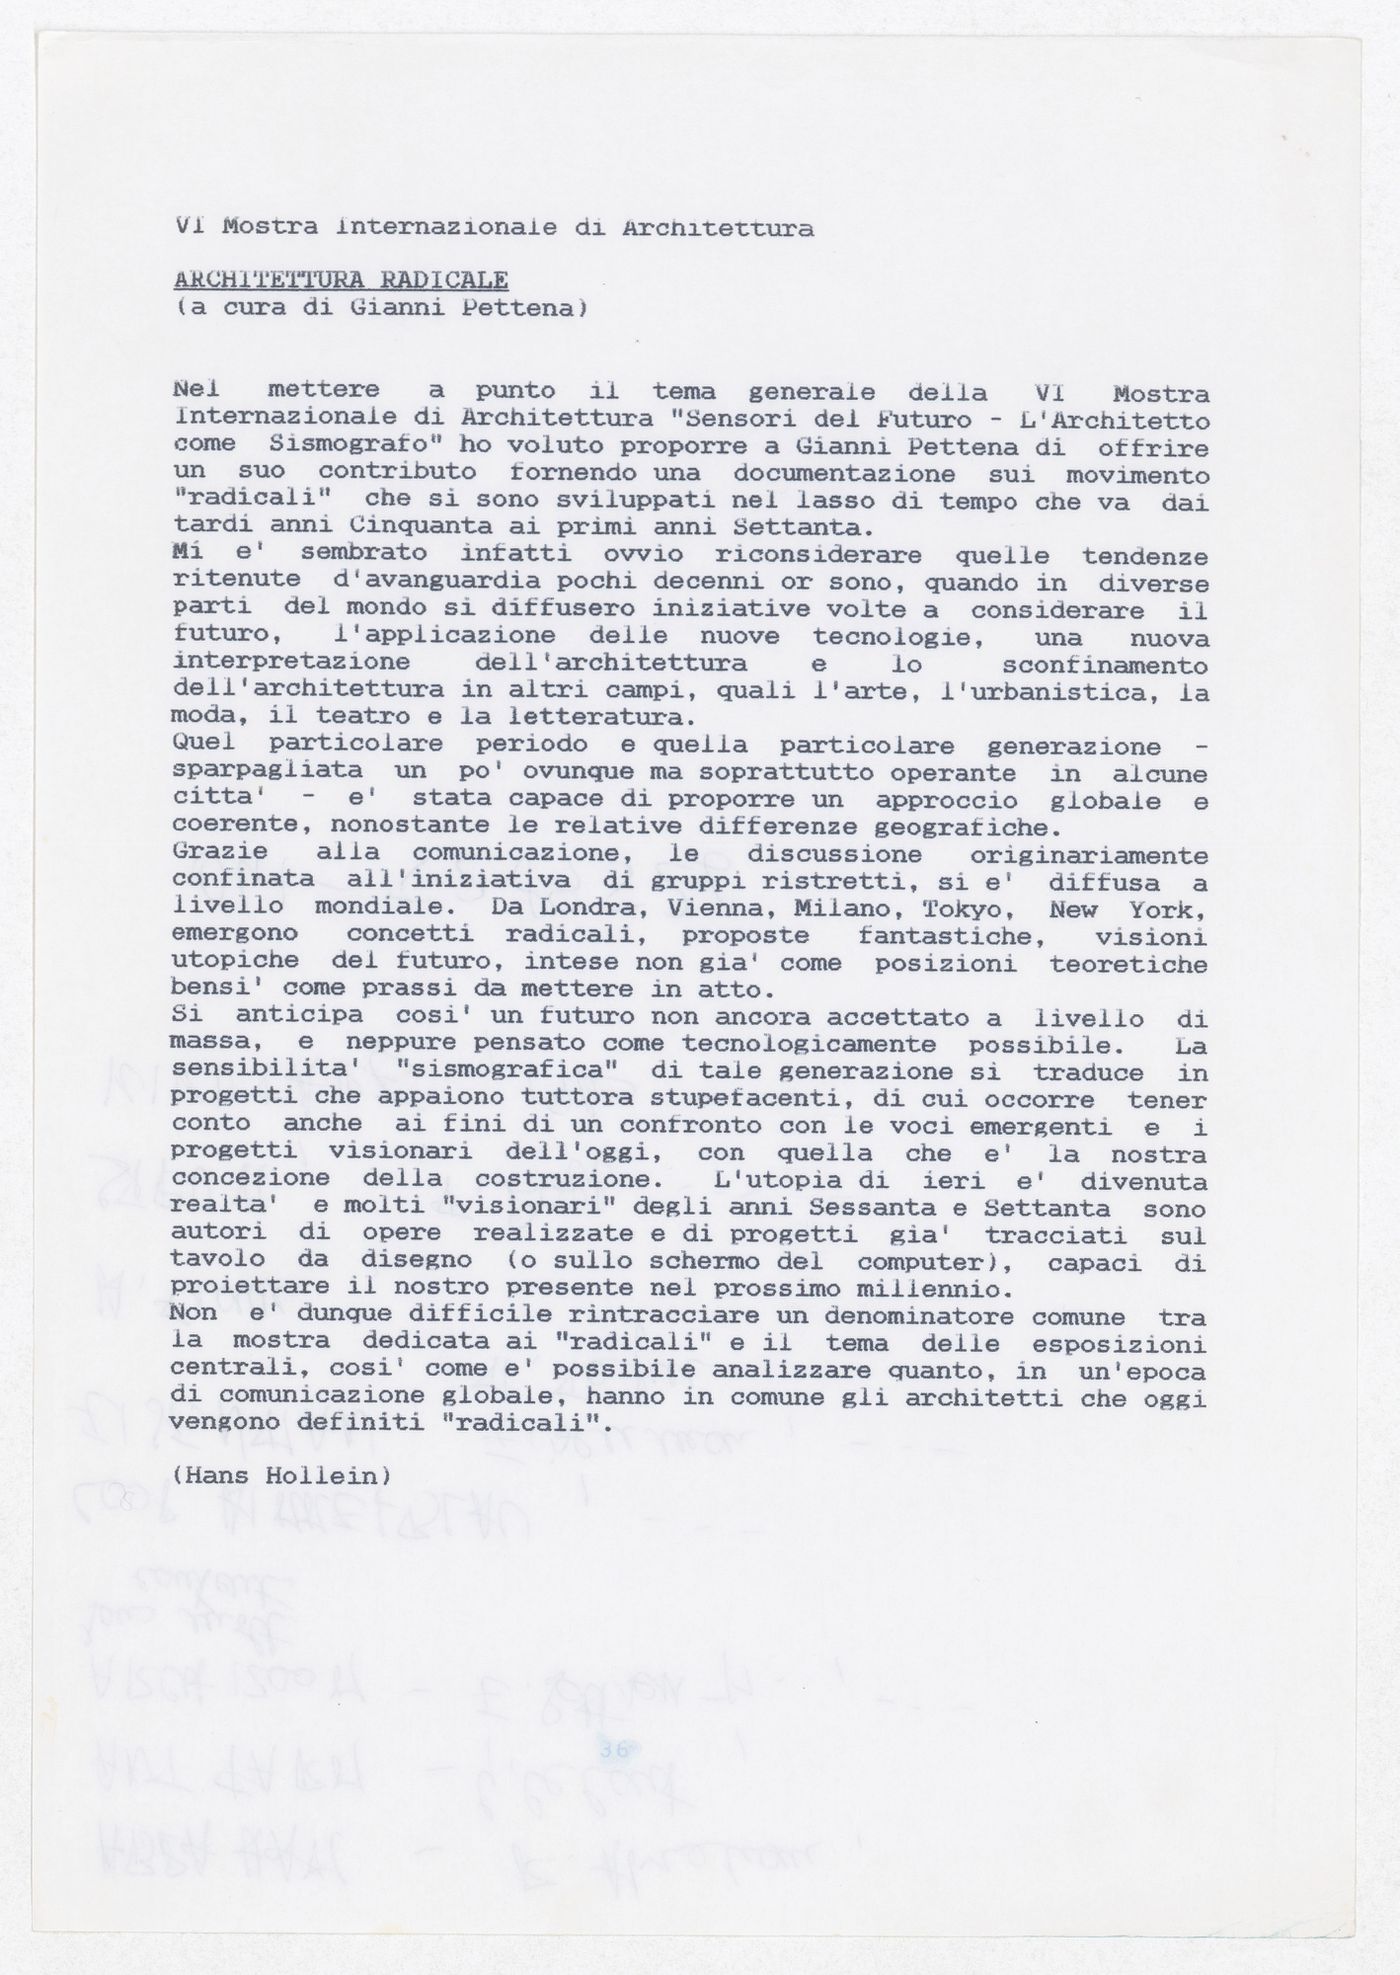 Exhibition description written by Hans Hollein for the exhibtion Radicals.  Architettura e Design 1960-1975